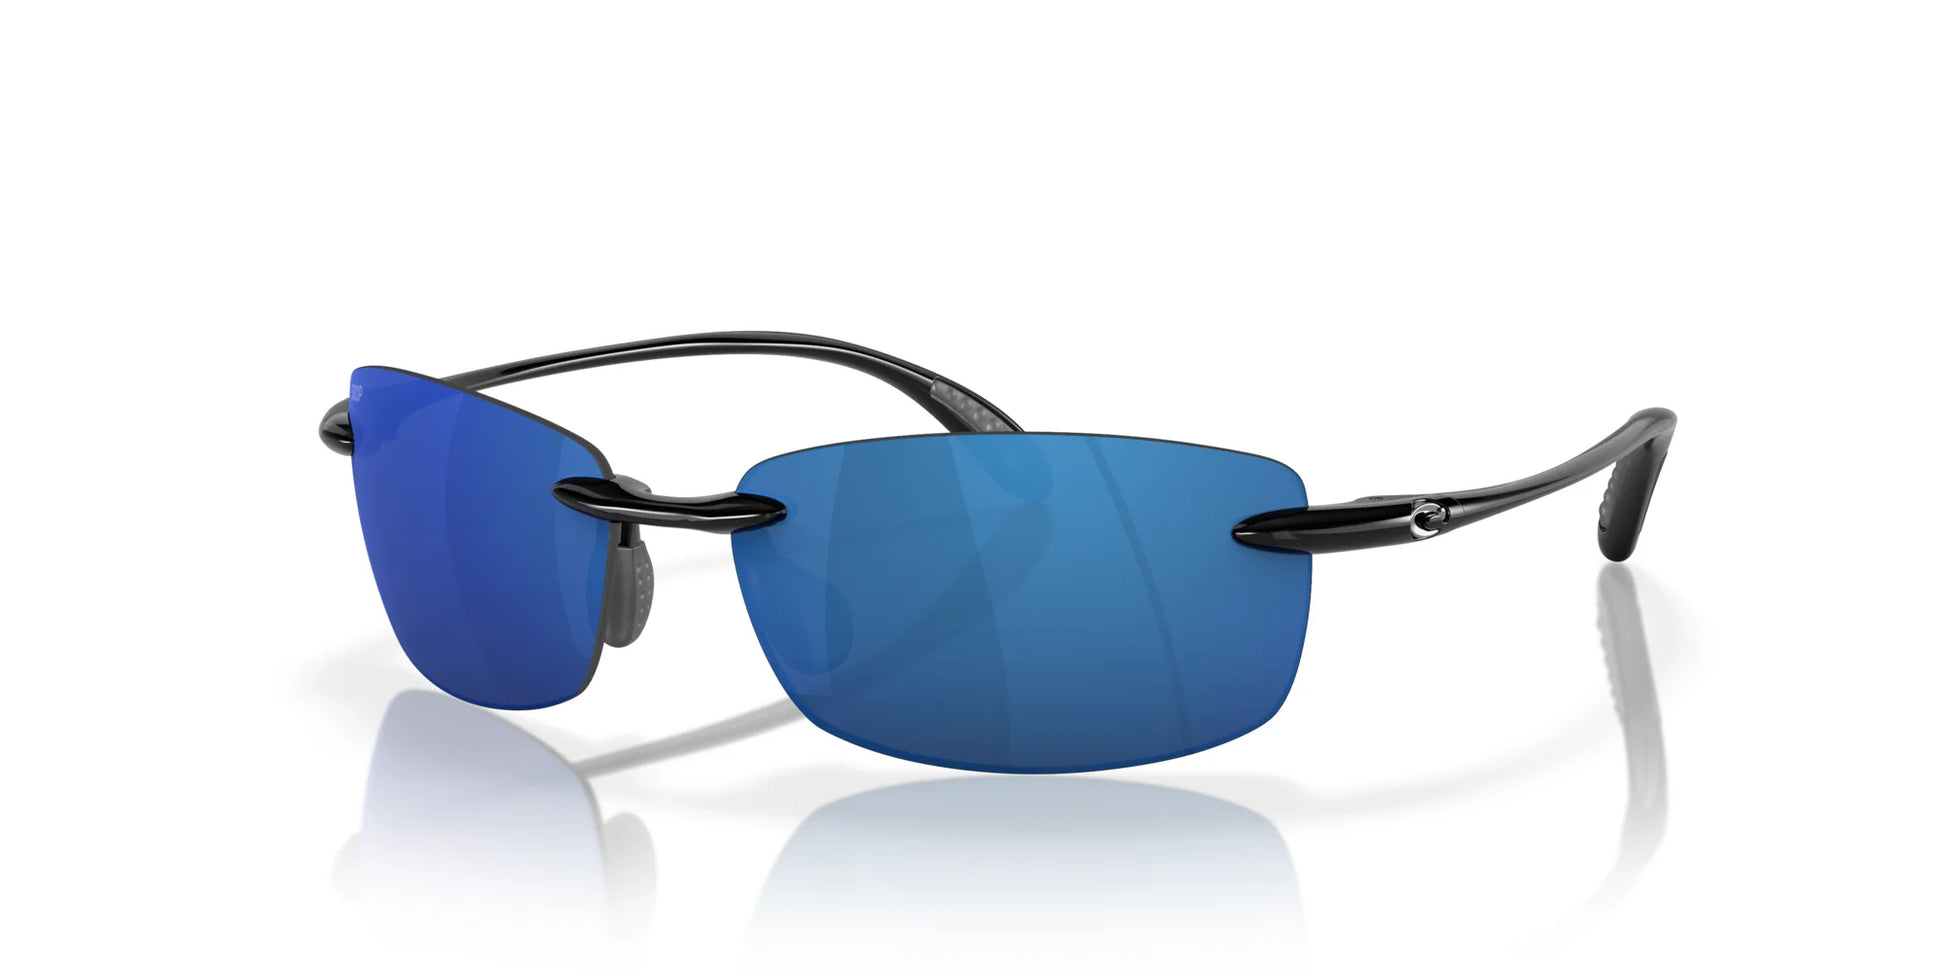 Costa BALLAST 6S9071 Sunglasses Shiny Black / Blue Mirror